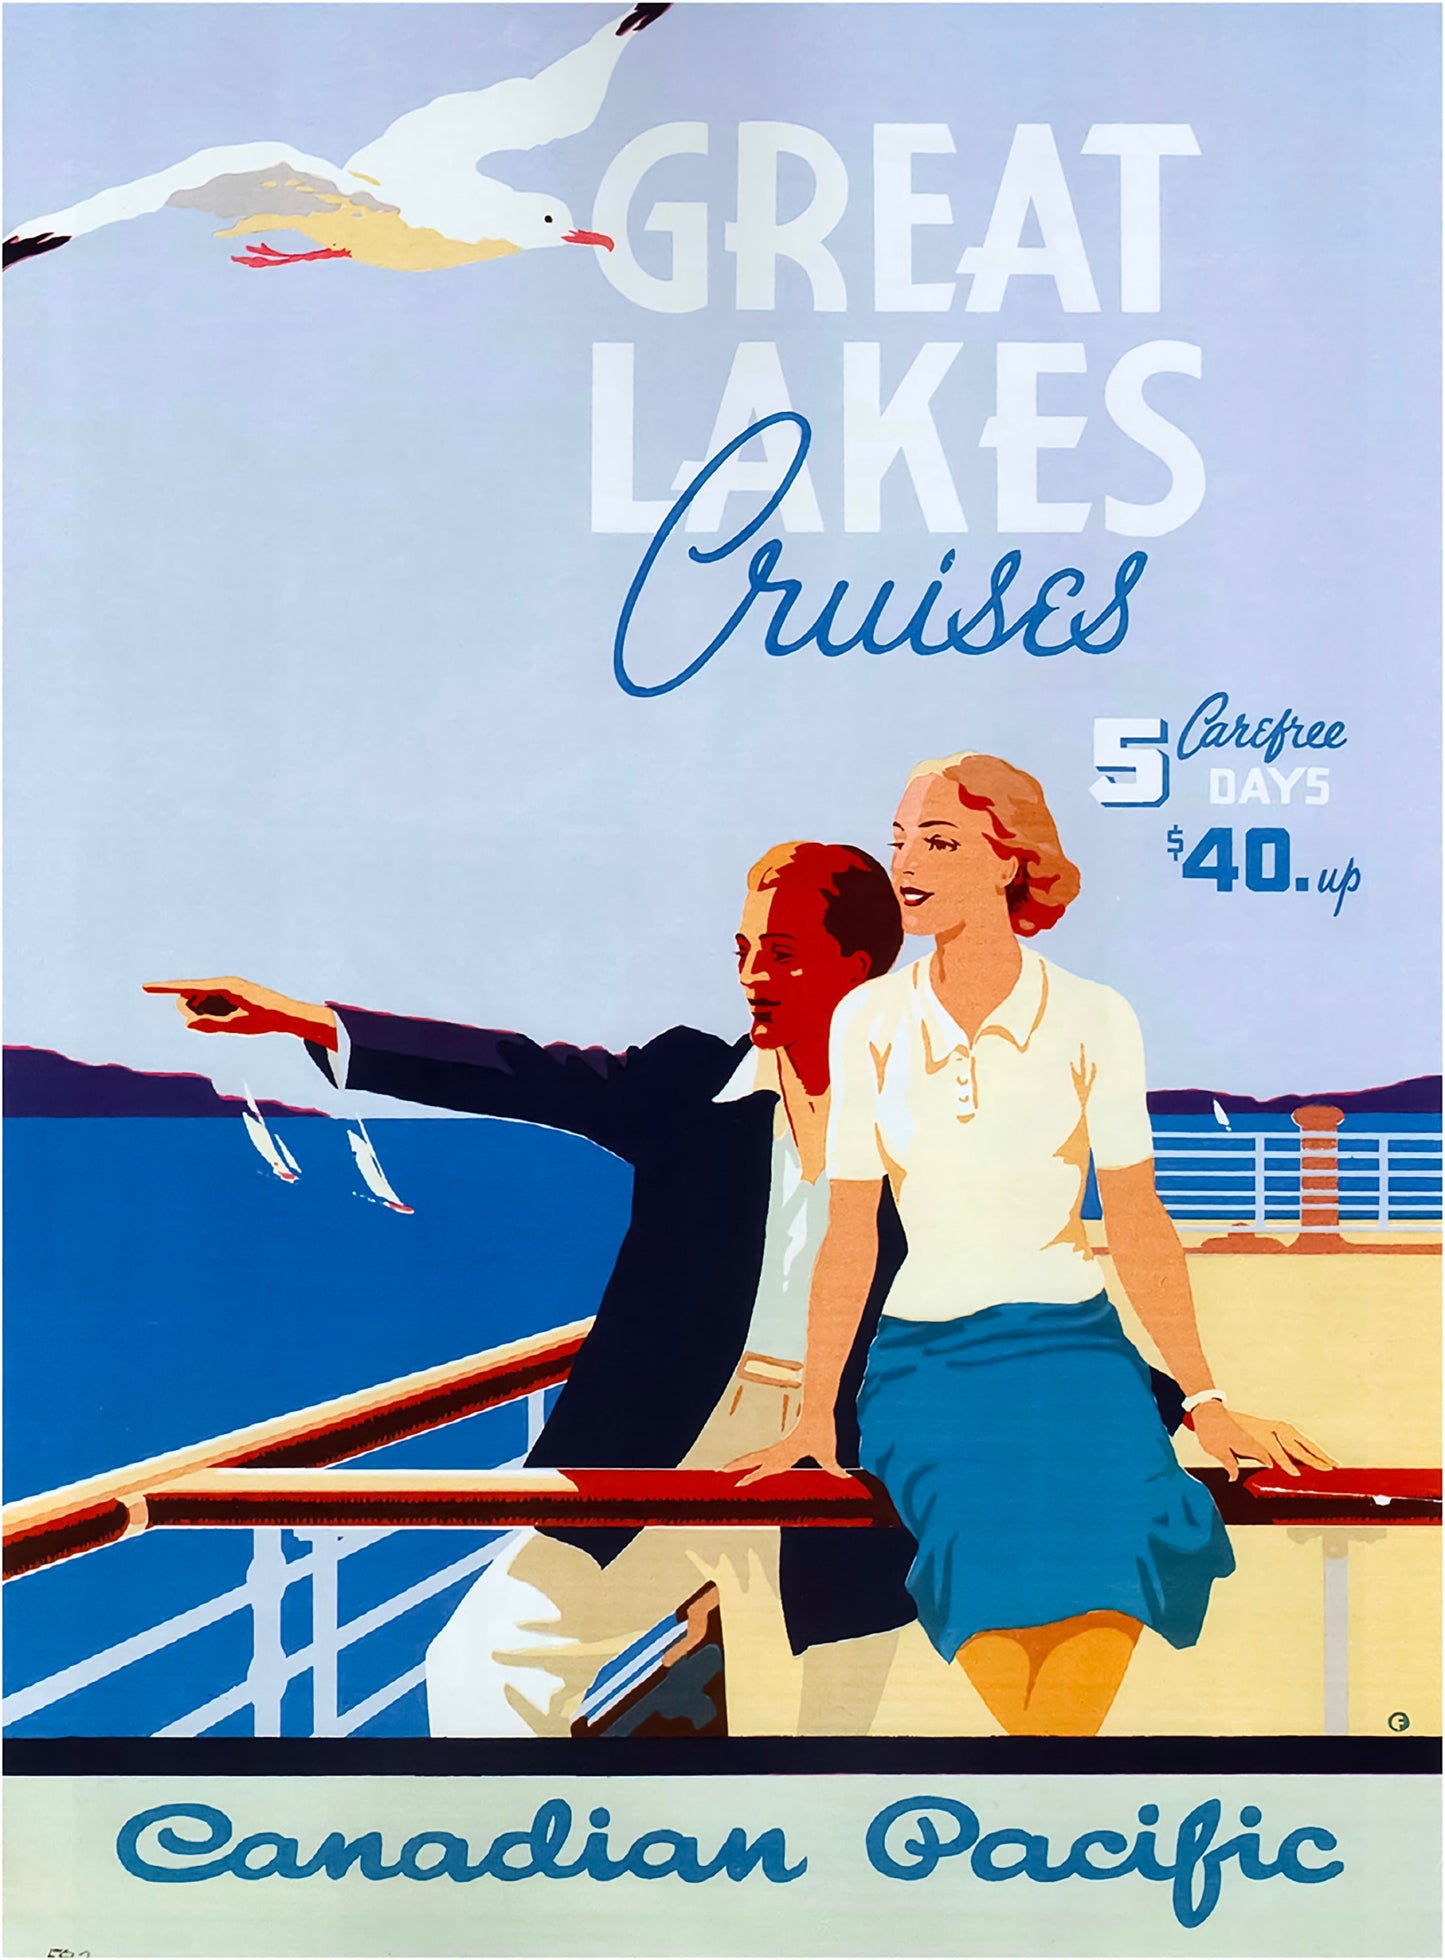 Vintage International Travel Posters Set 3 [37 Images]